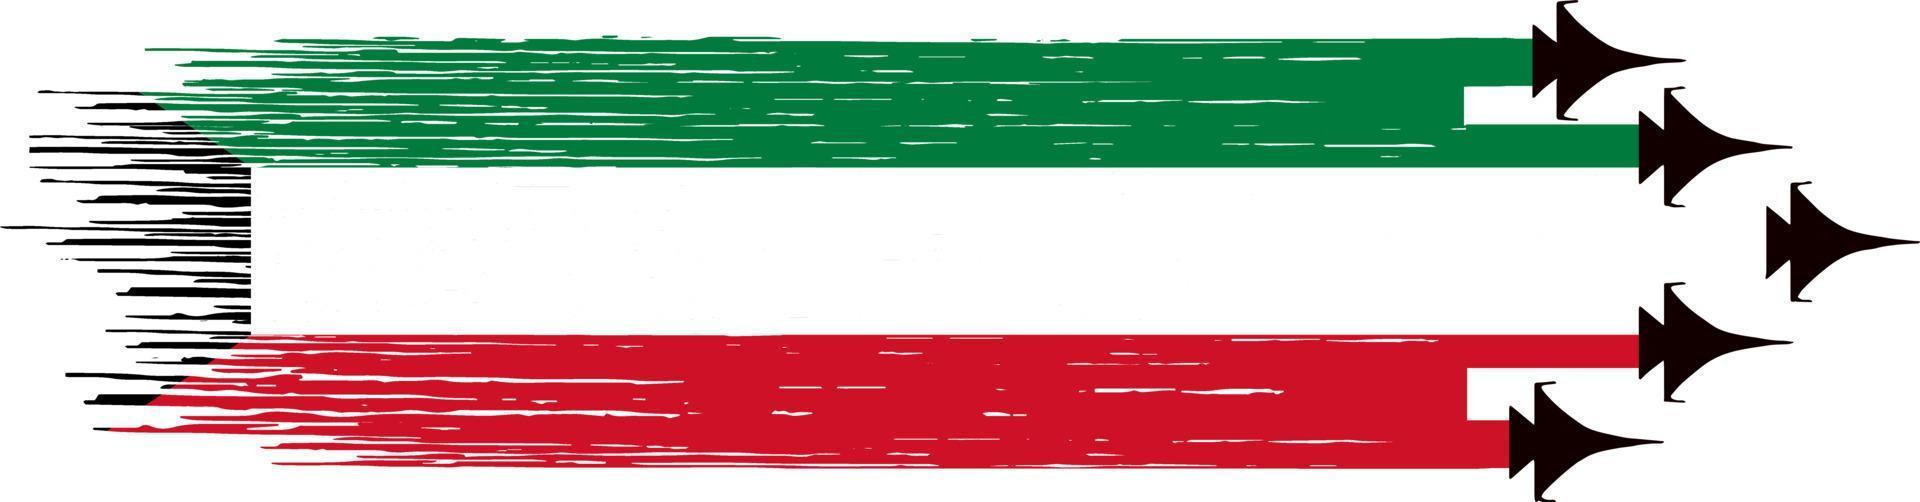 bandeira do kuwait com caças militares isolados em png ou .symbols transparentes do kuwait. ilustração vetorial vetor